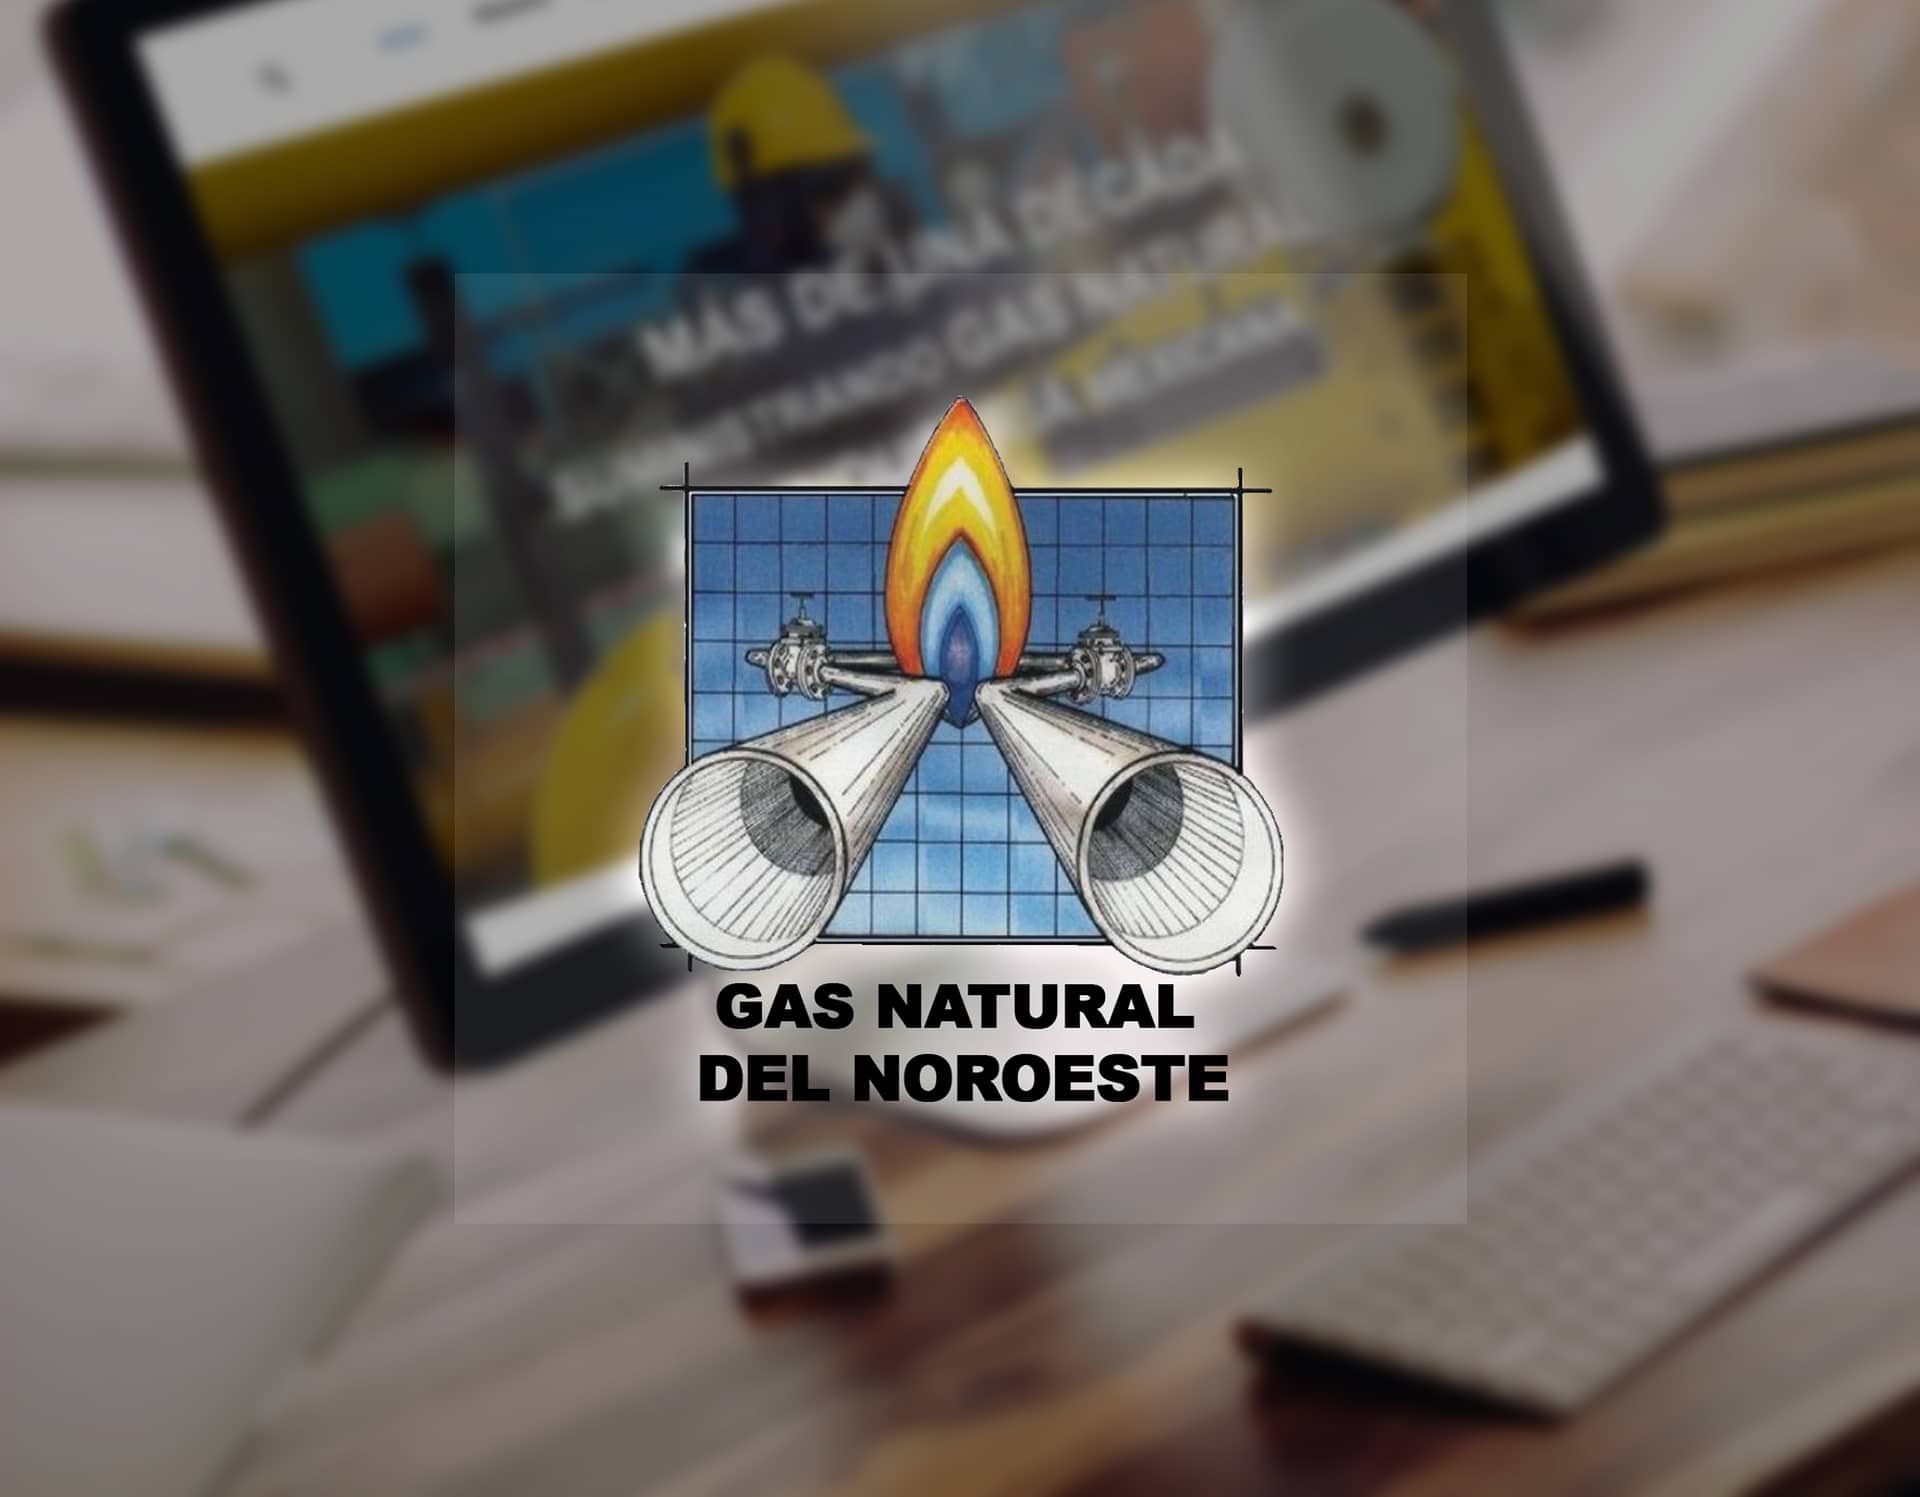 GAS NATURAL DEL NOROESTE